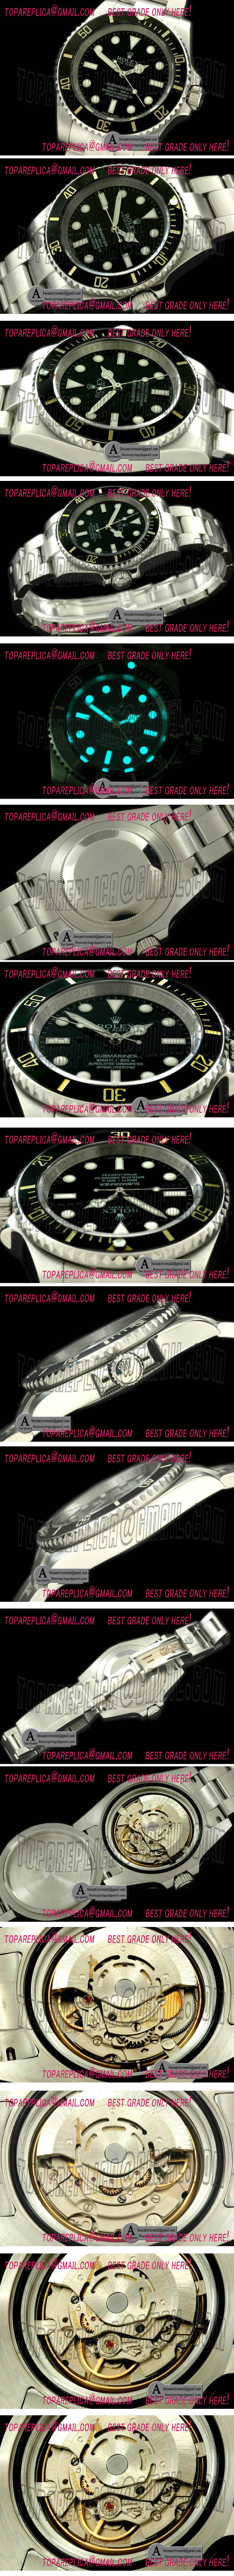 Rolex Submariner 114060 2012 NoDate Replica Watches